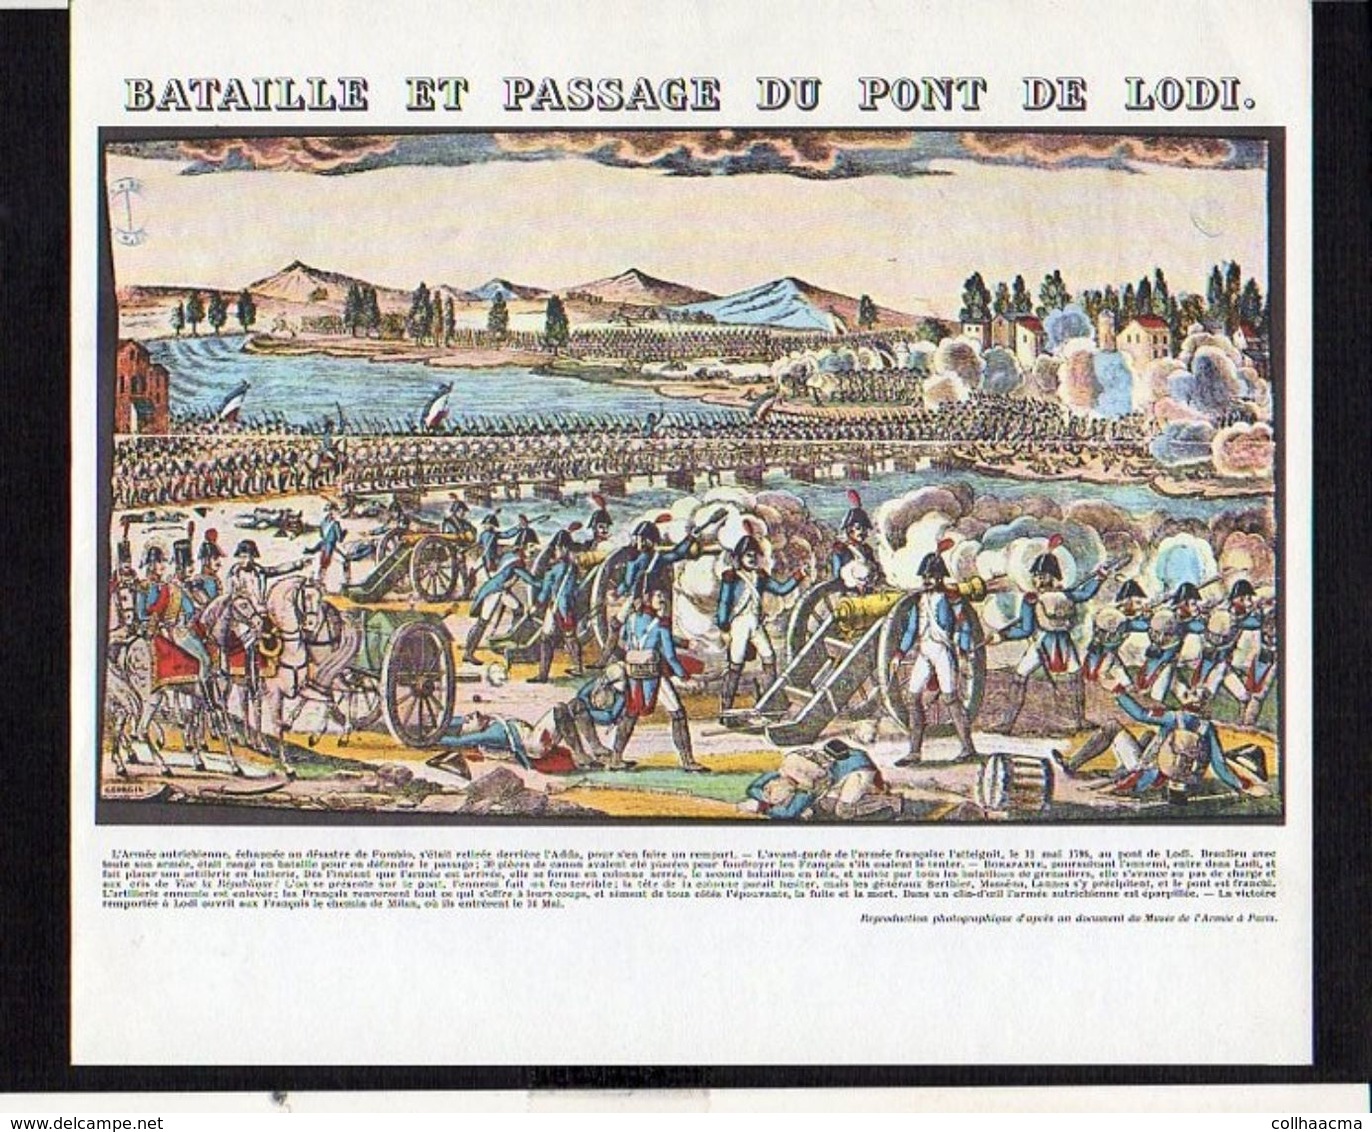 Publicité Pharmaceutique / Militaria Militaire / Série Napoléon Bonaparte / Bataille Et Passage Du Pont De Lodi - History